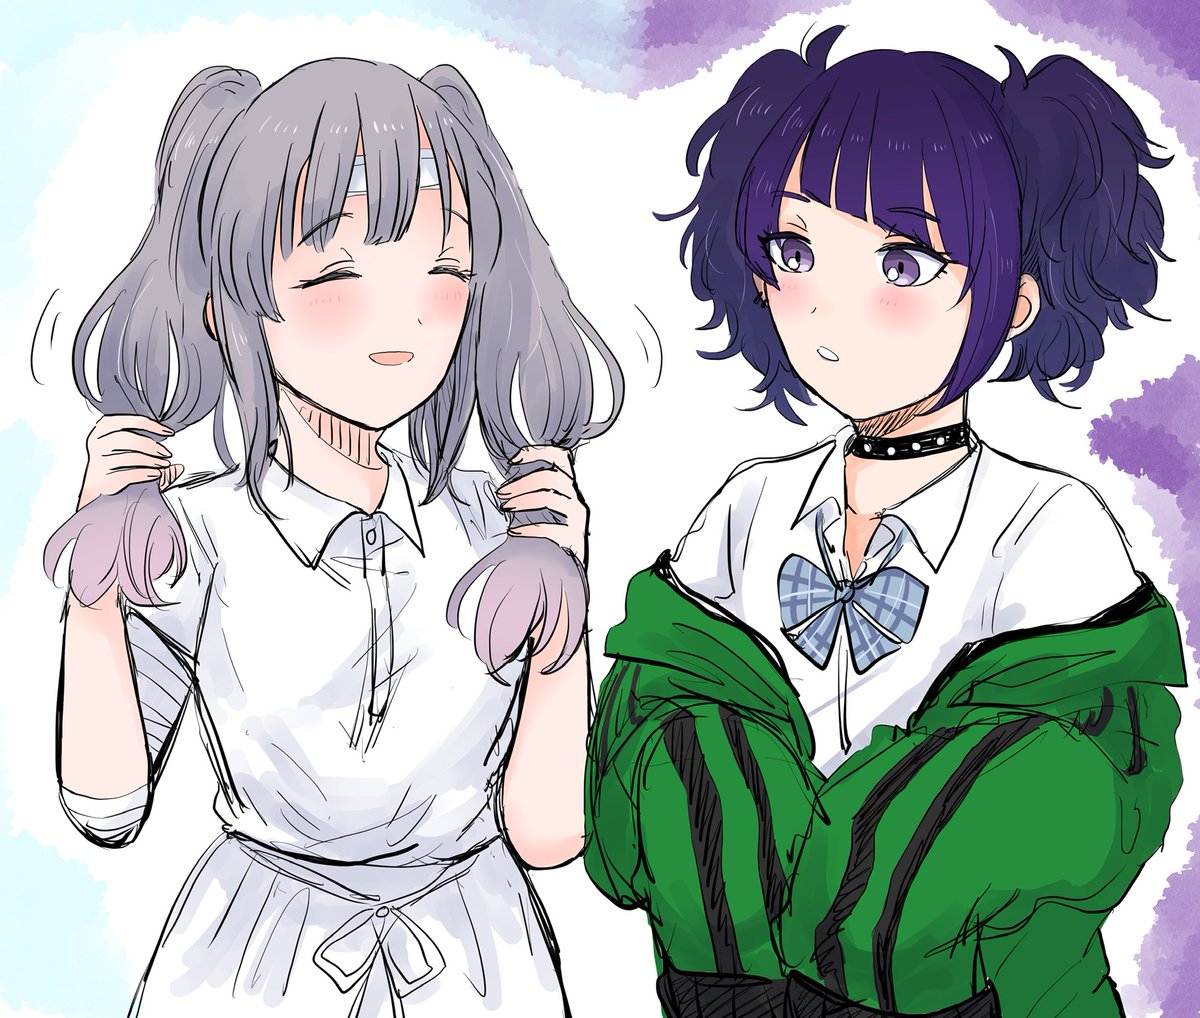 tanaka mamimi ,yukoku kiriko multiple girls 2girls twintails diagonal bangs purple eyes grey hair purple hair  illustration images